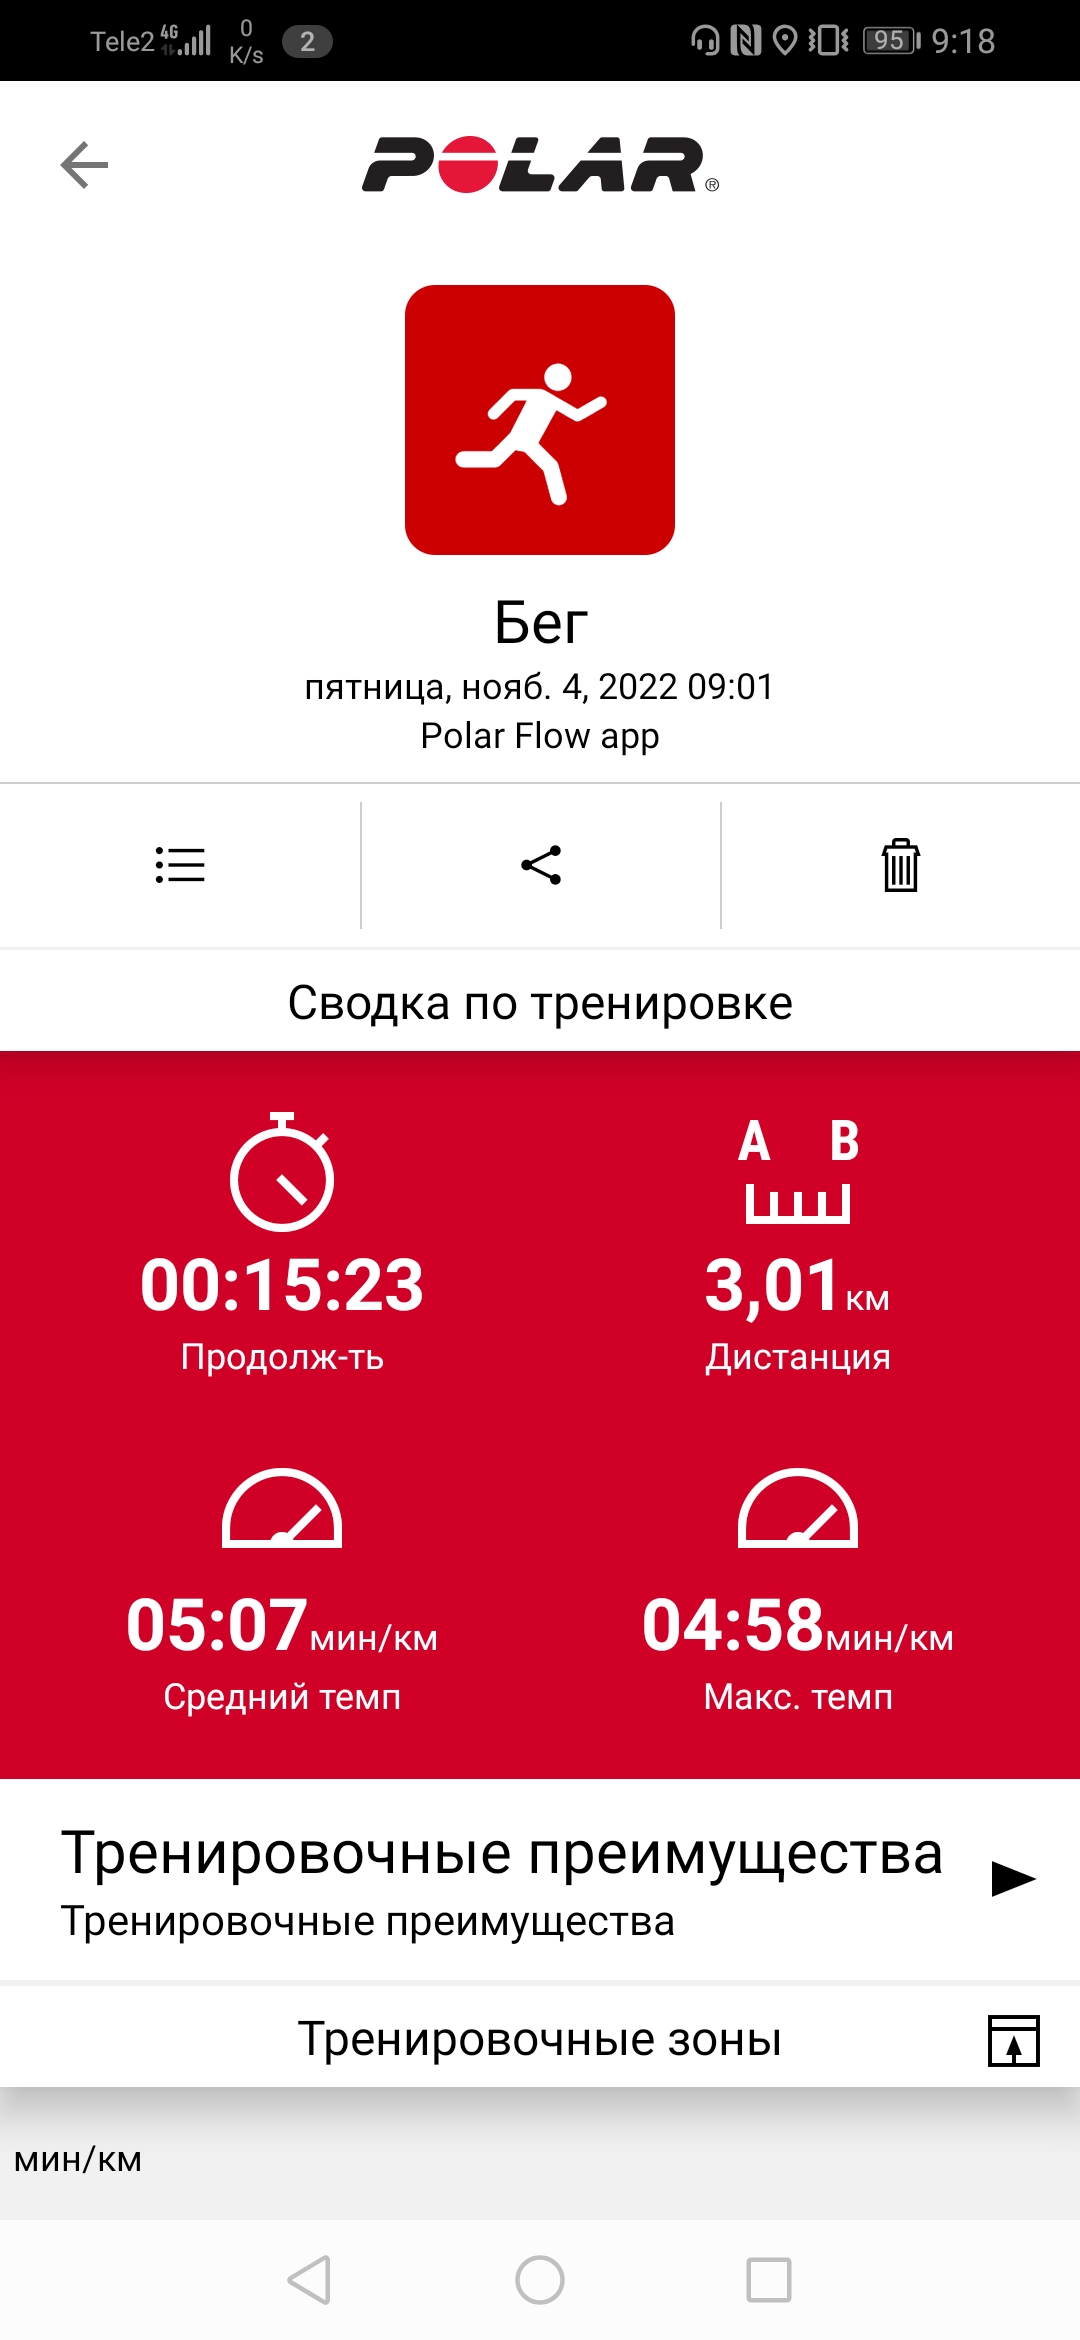  Загрузка от 04.11.2022 00:00:00 Третьяченко Сергей 